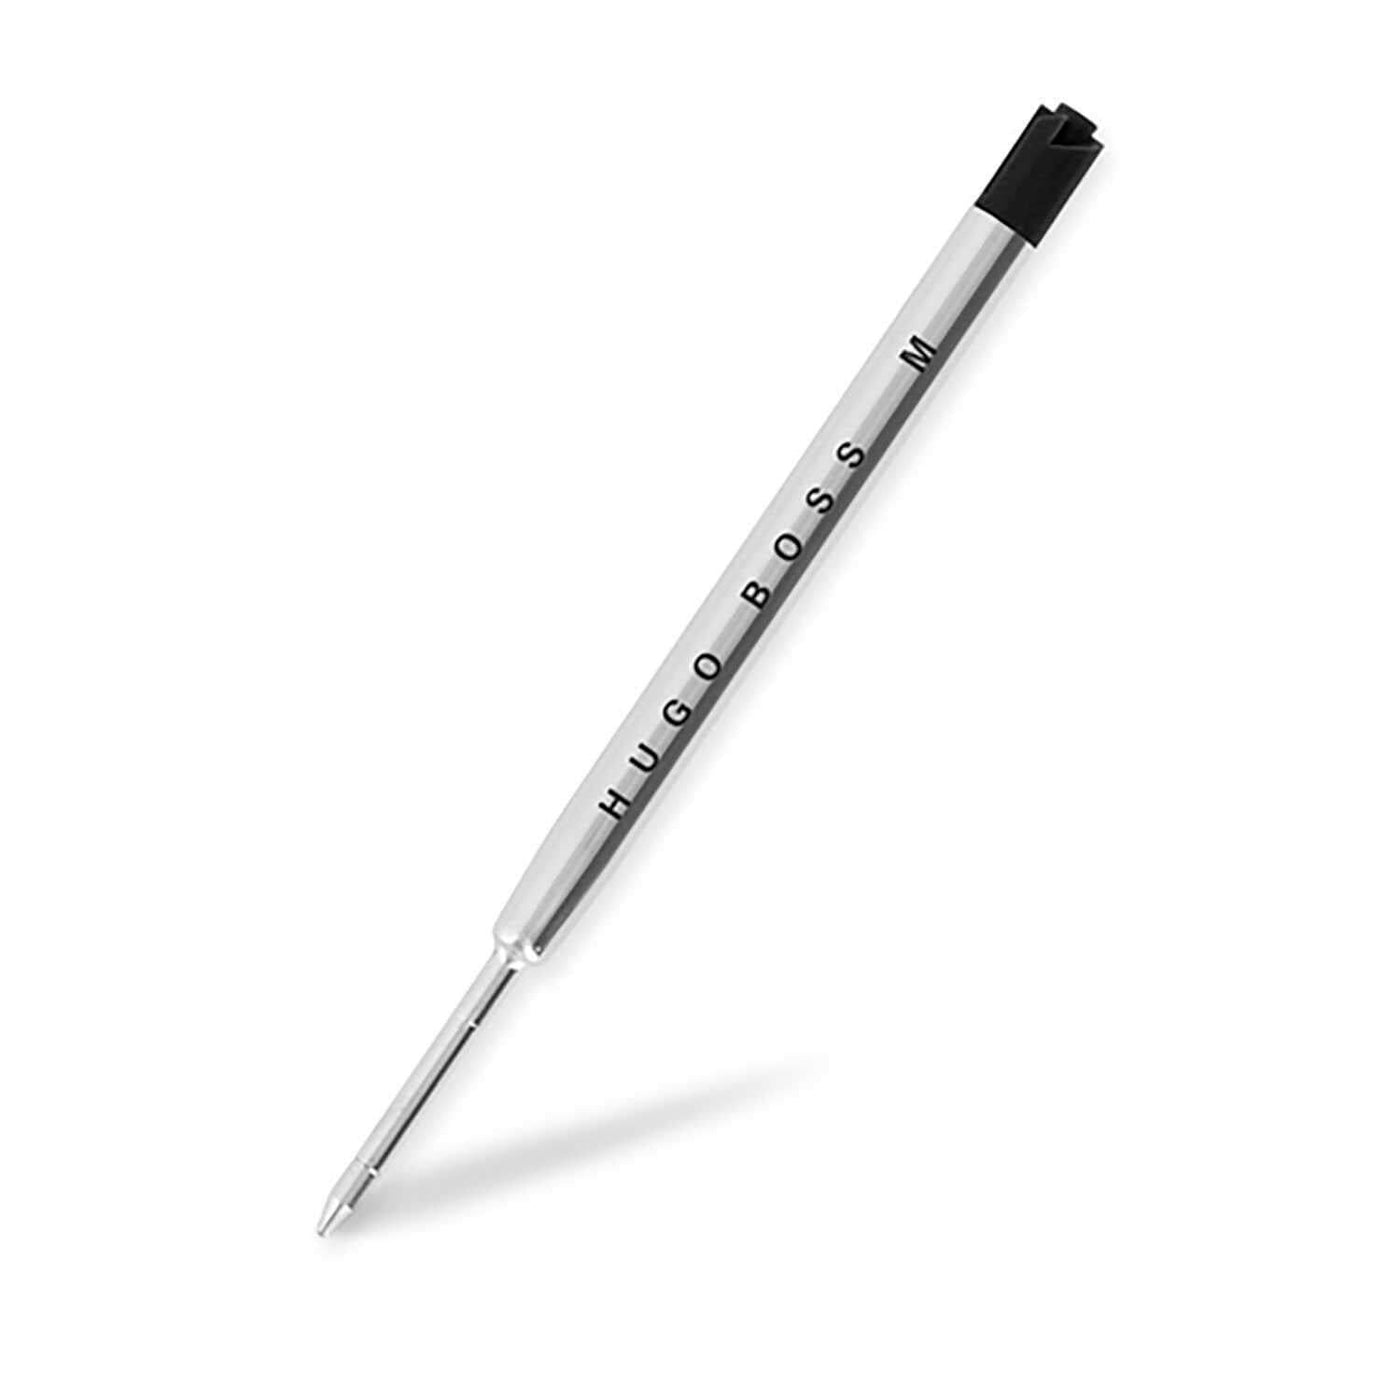 Hugo Boss Jotter Medium Ball Pen Refill Black